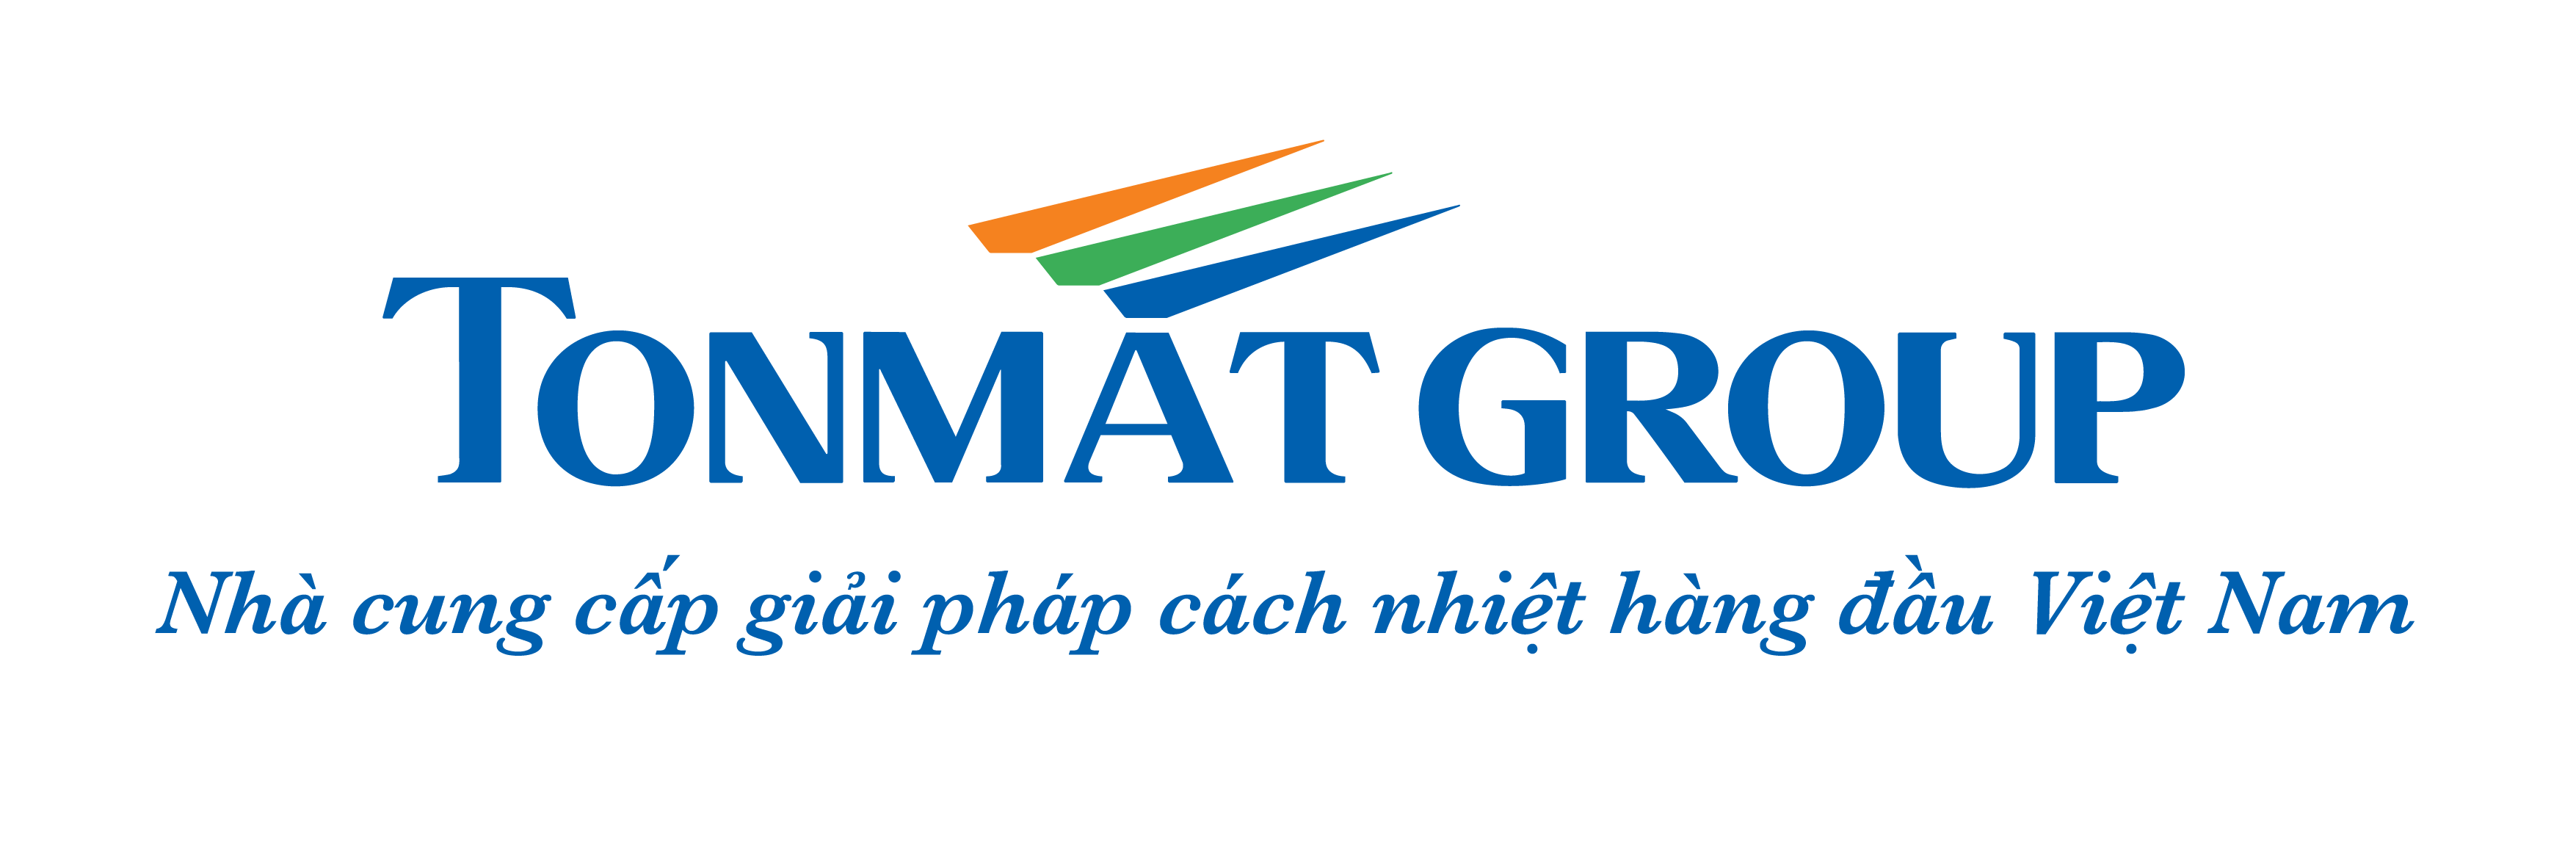 TMG logo+slogan